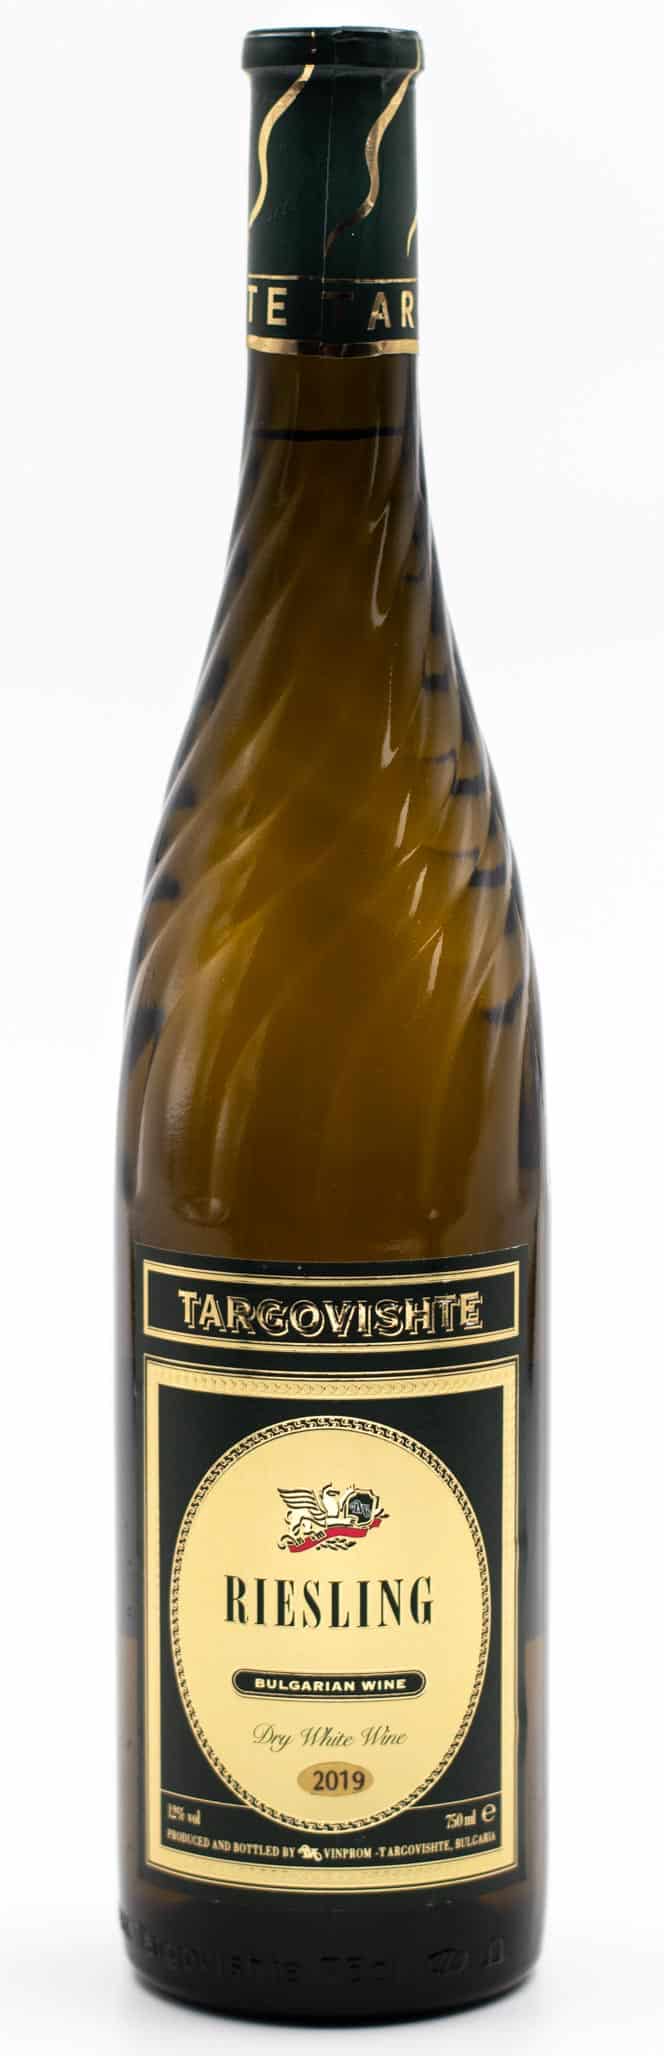 Bulharské víno bíle suché Riesling Targovishte v zakroucené láhvi prowine